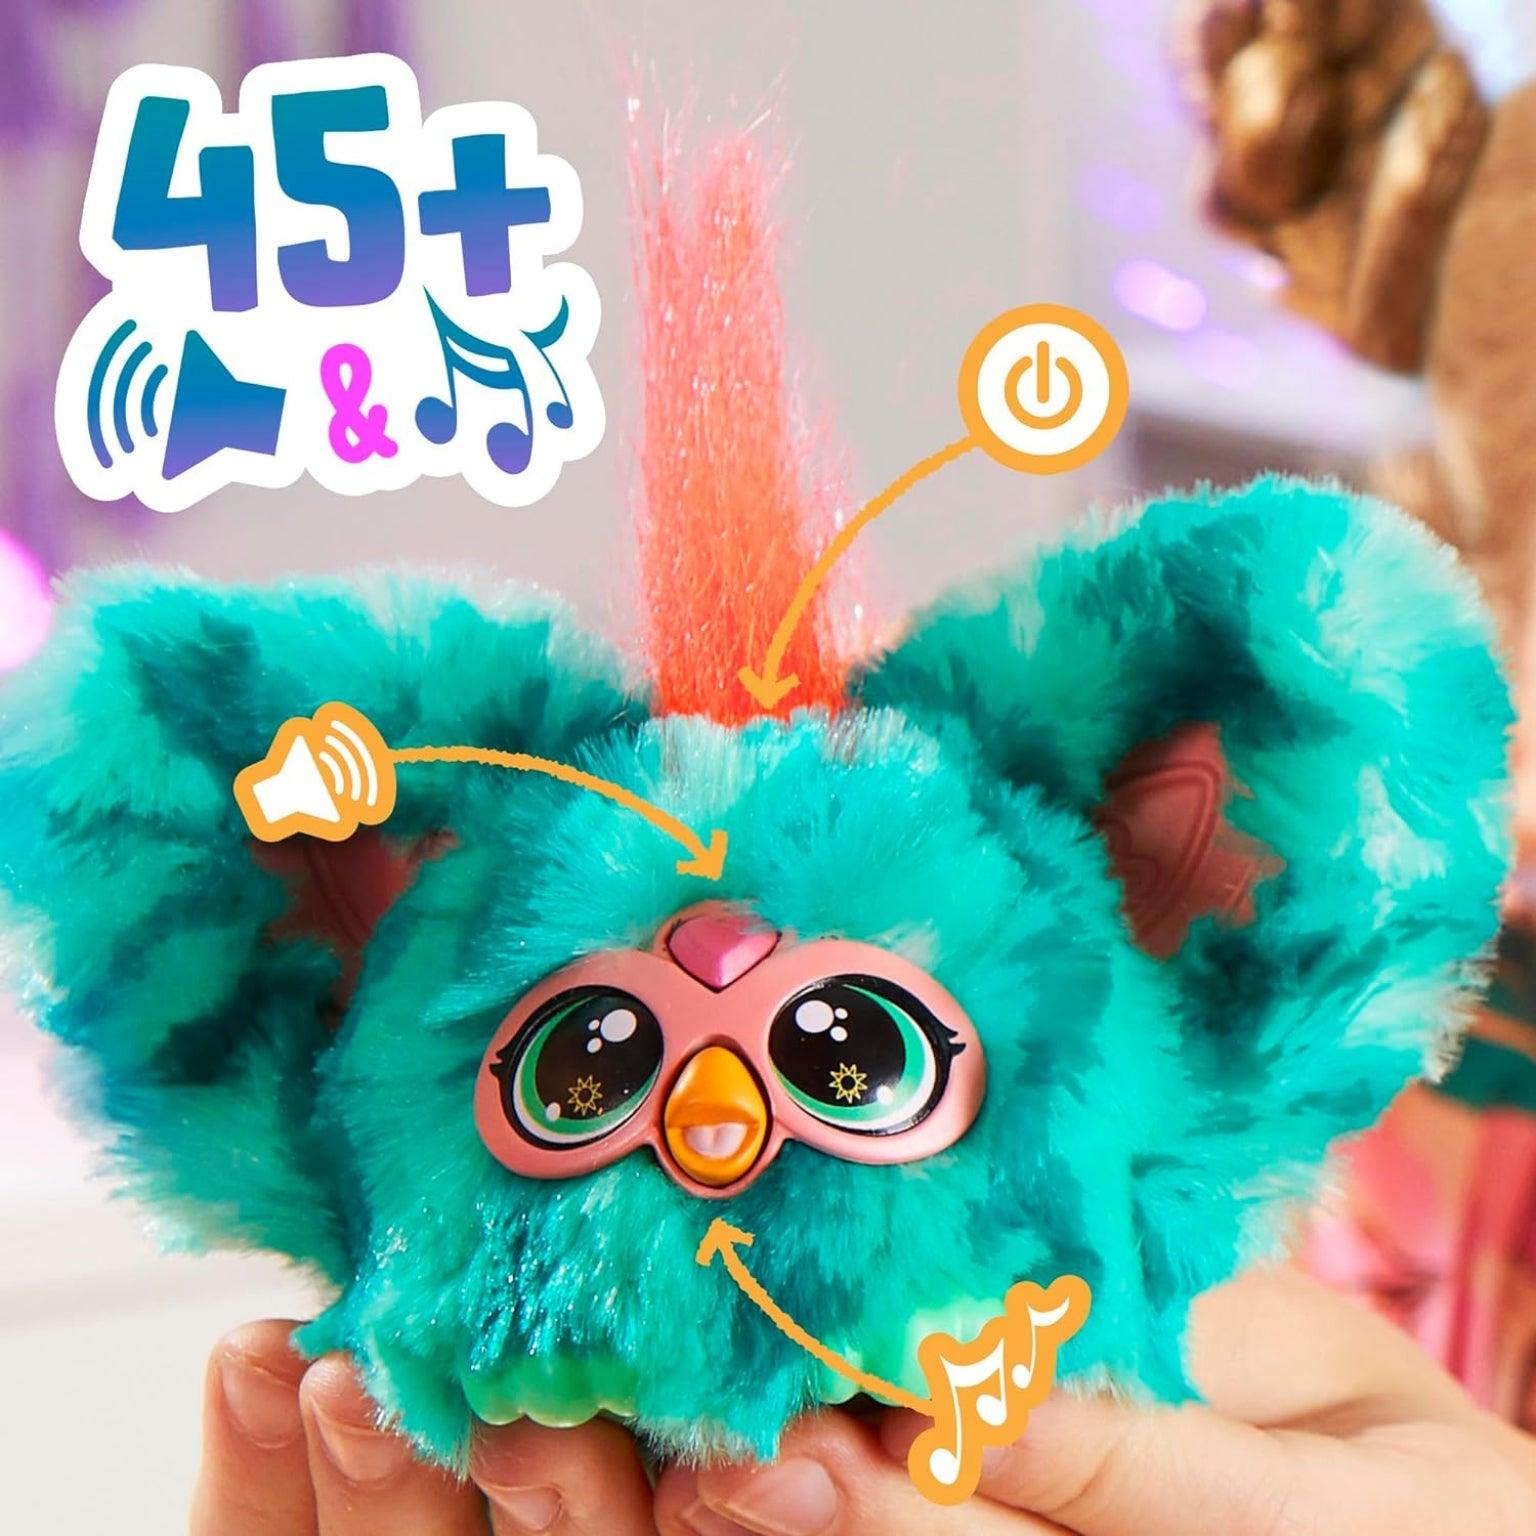 Furby Furblets Mello-Nee - Brincatoys